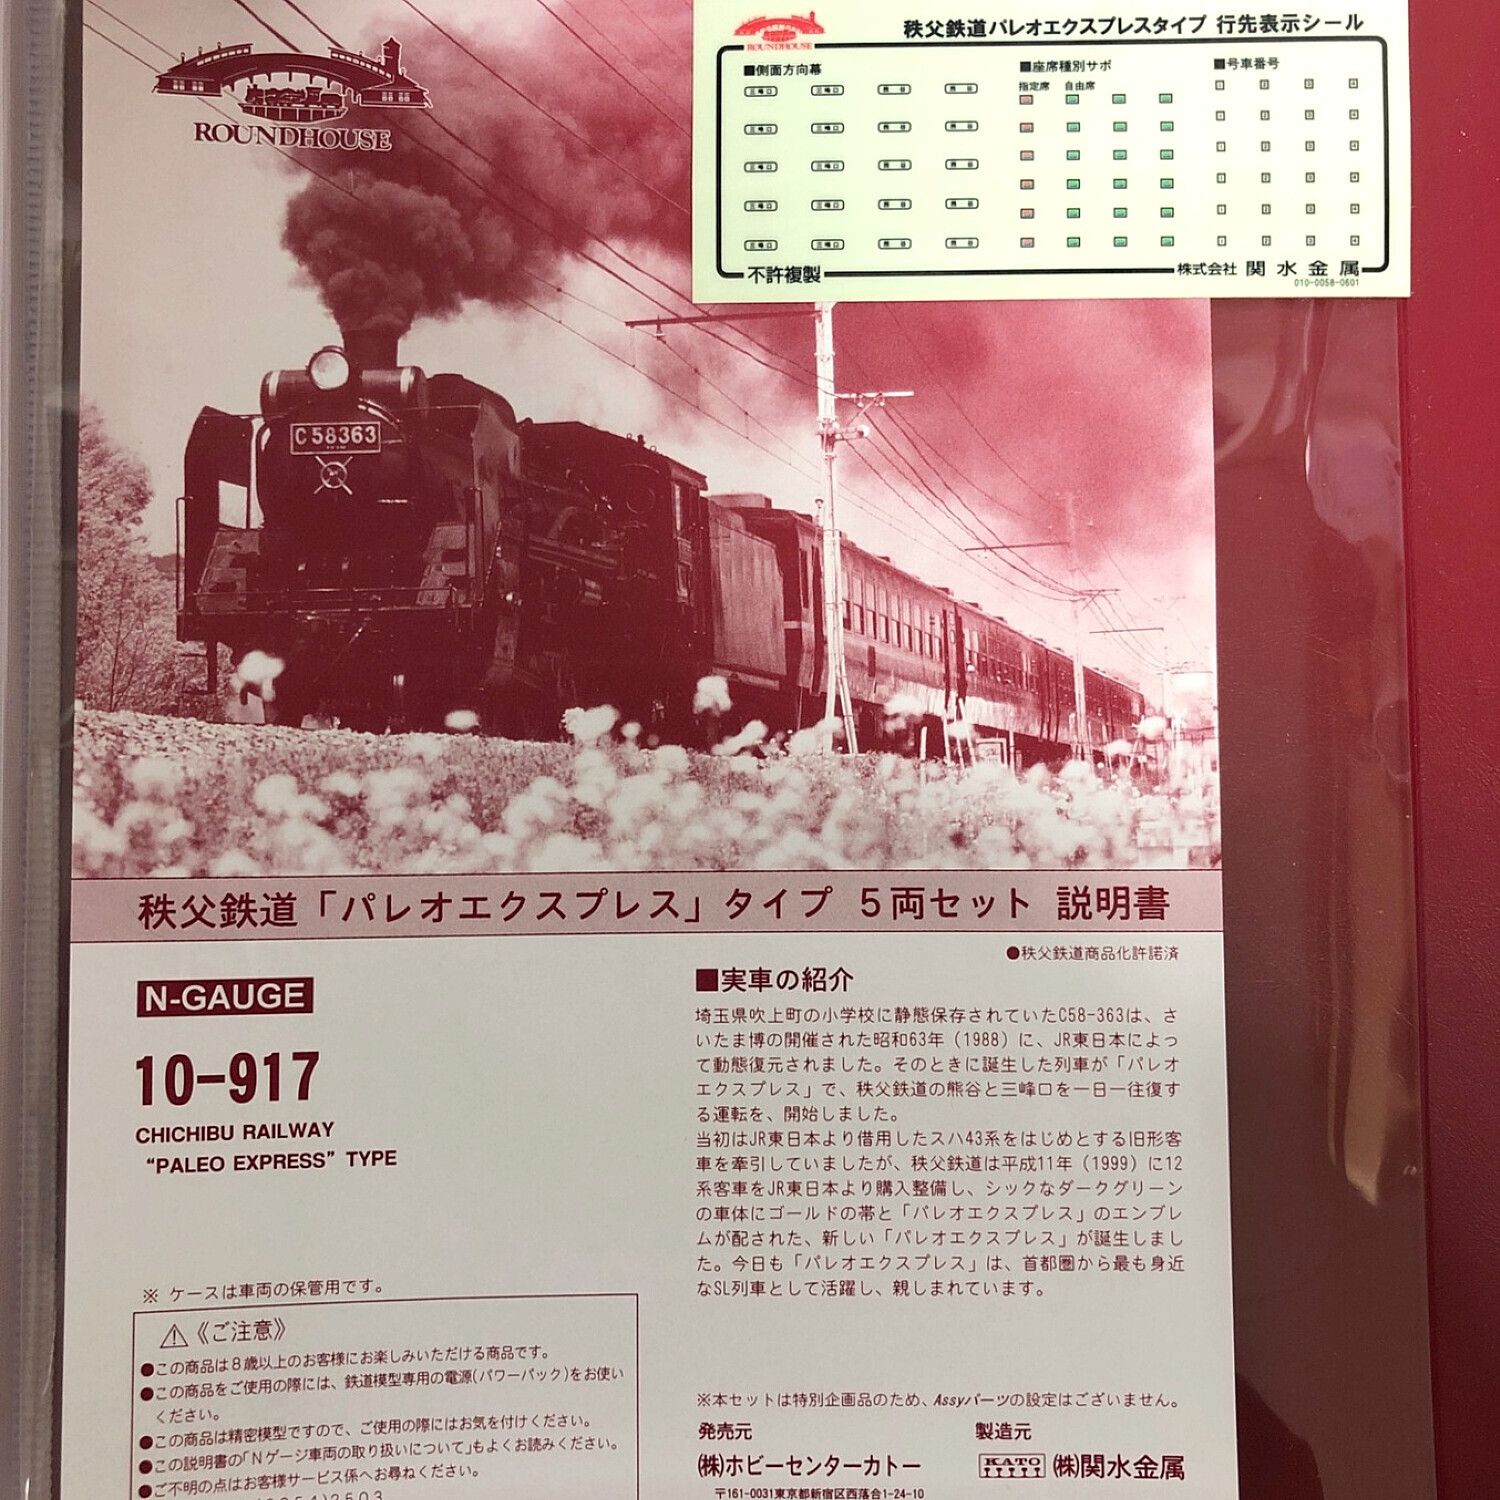 KATO (カトー) Nゲージ 秩父鉄道「パレオエクスプレス」タイプ5両 